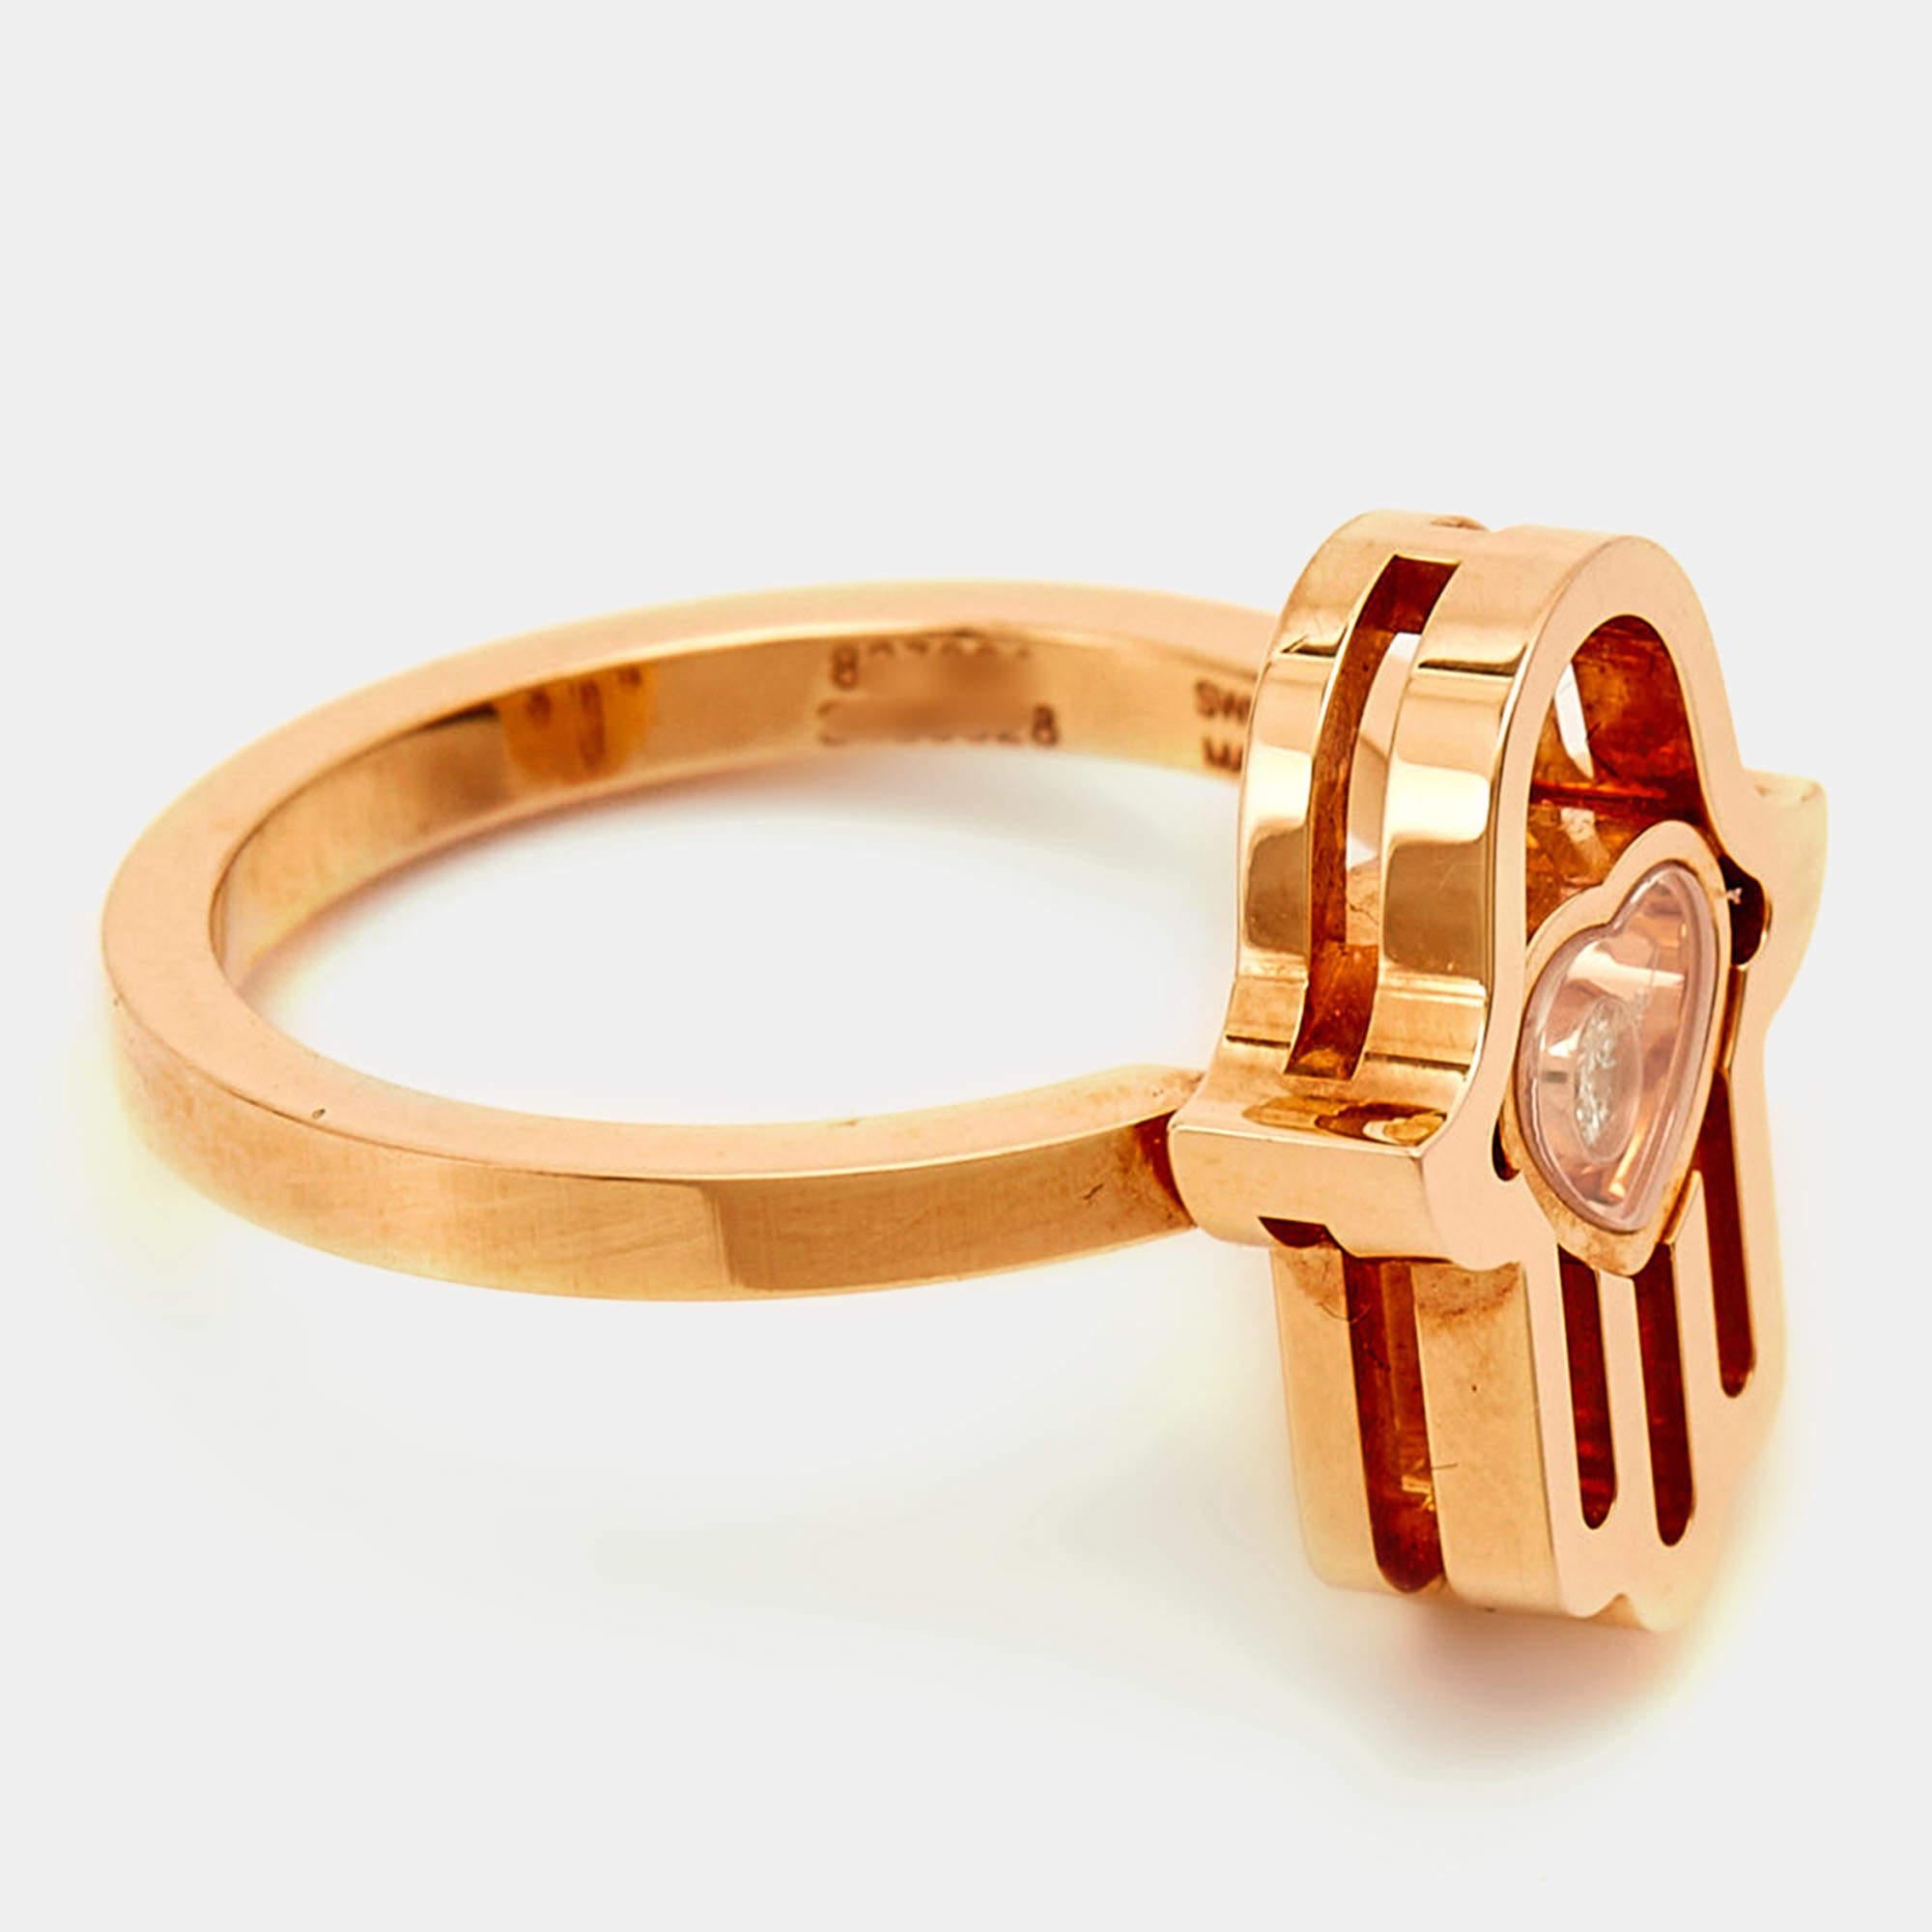 Dieser Chopard Good Luck Charm Hamsa Hand Diamantring ist aus 18 Karat Roségold gefertigt. Das Highlight des Designs, die HAMSA-Hand, besteht aus einem Herzmotiv, das einen schwebenden Diamanten umschließt. Dieser schlichte und süße Ring kann Ihr